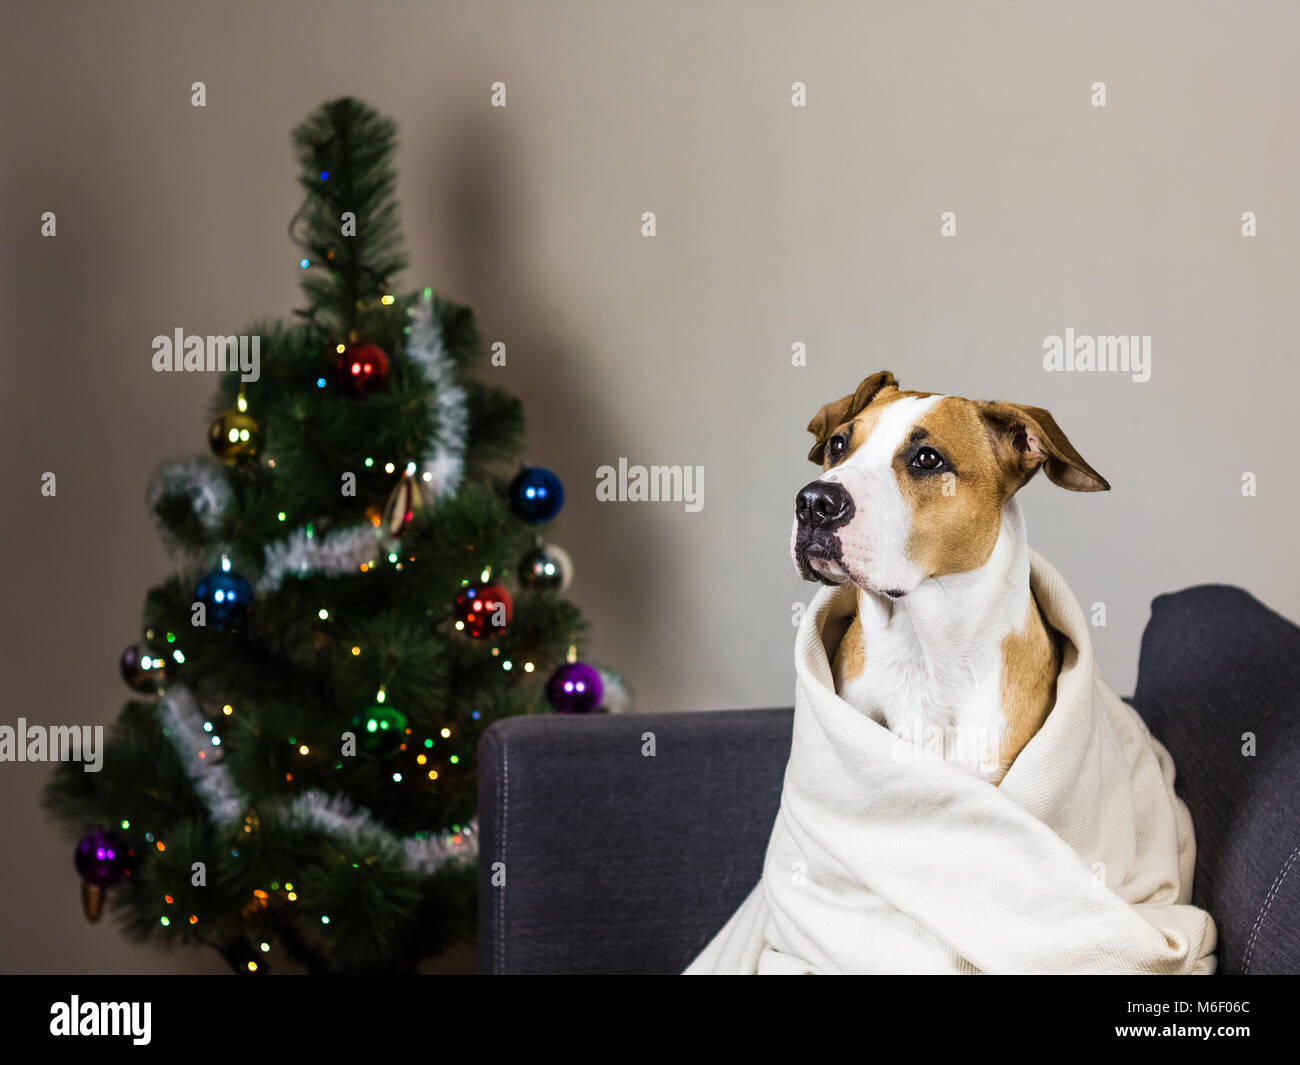 Dog on sofa and christmas fur tree Stock Photo